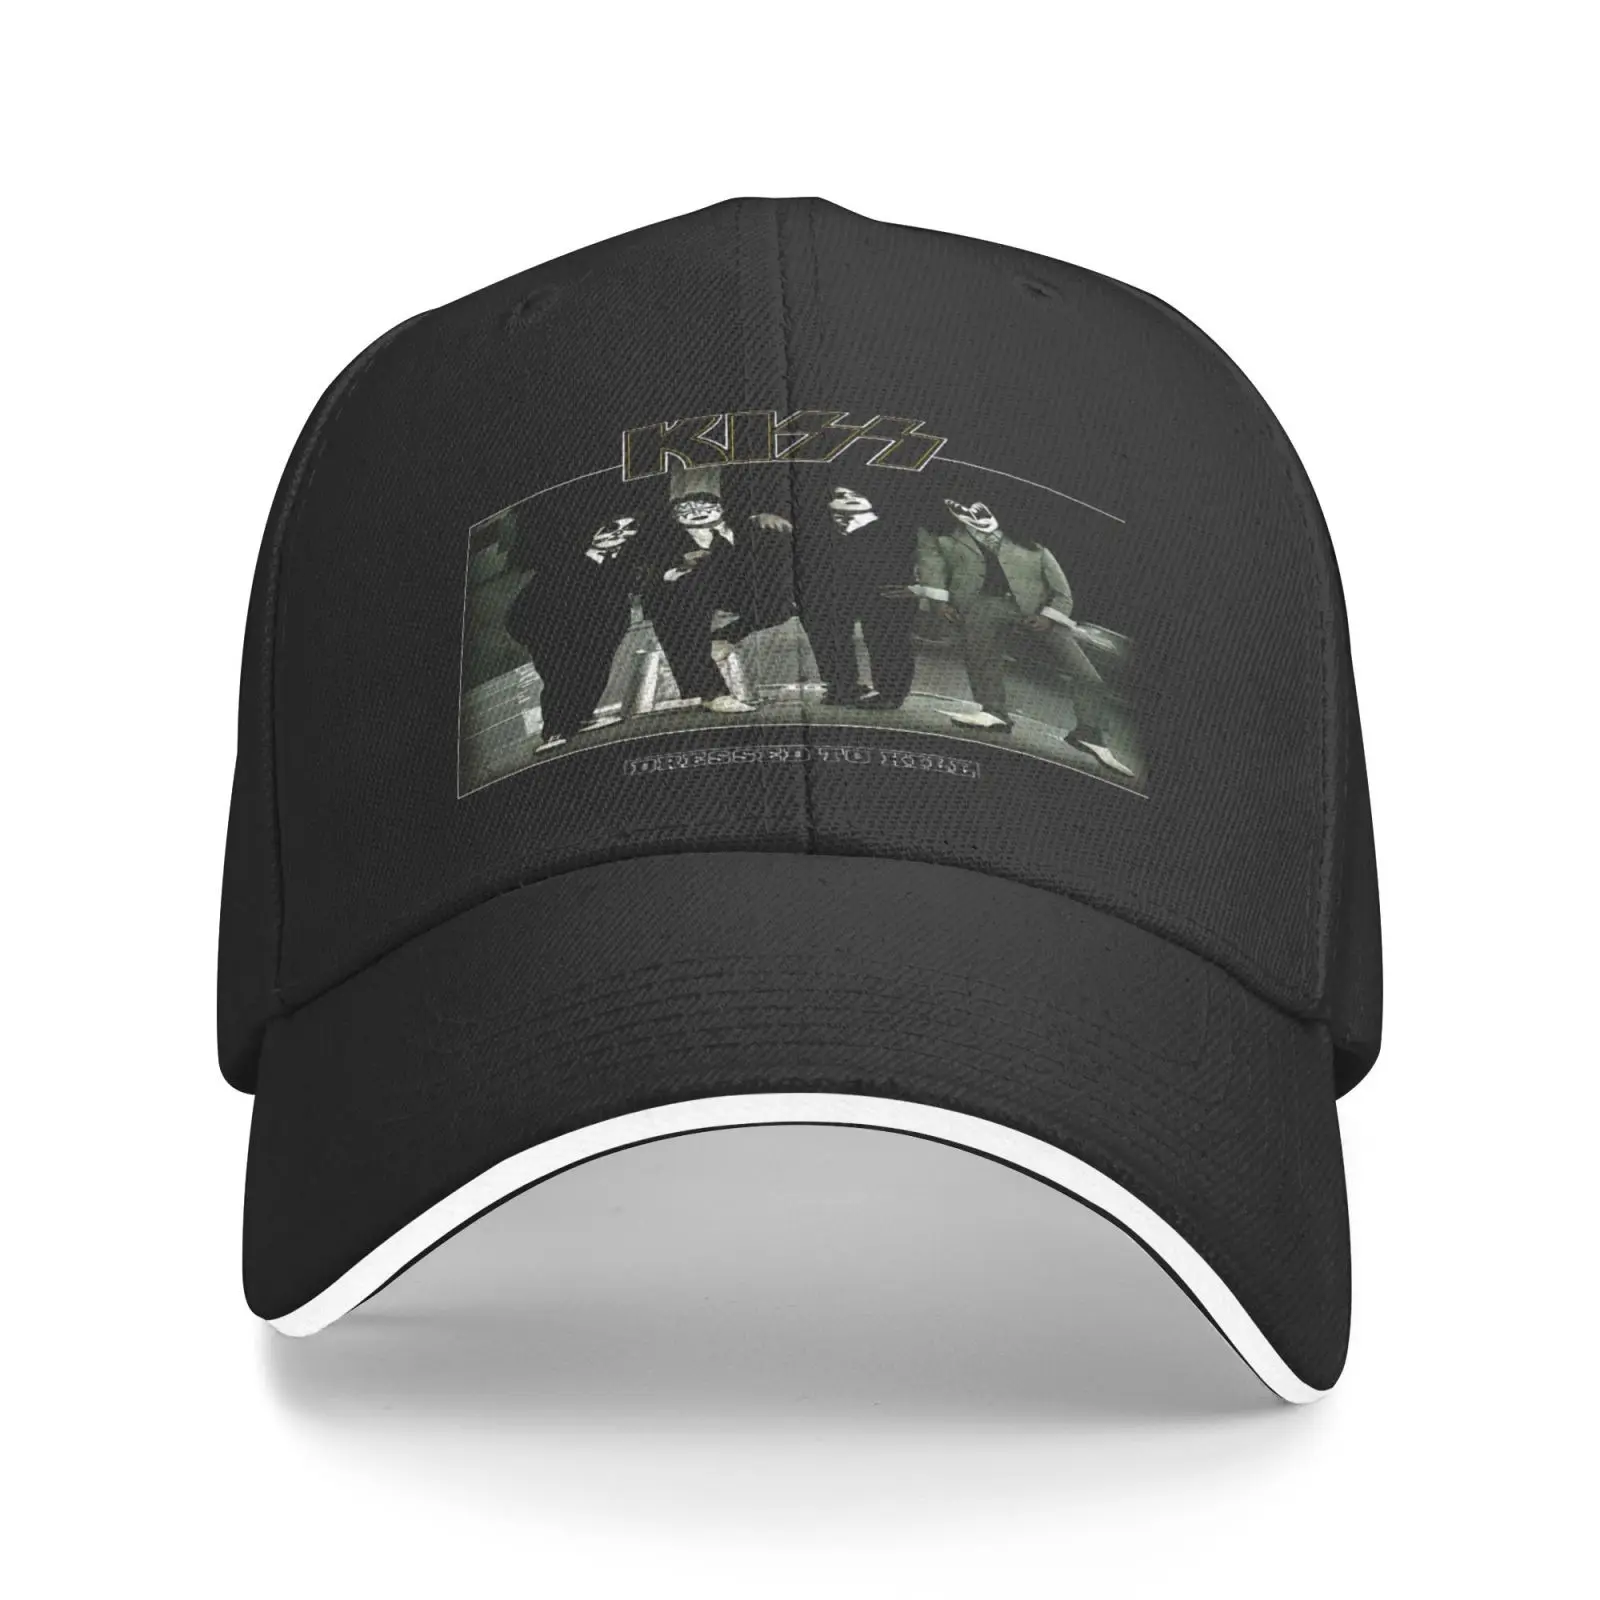 

Кепка Kiss Band мужская с надписью «To Kill Ace», ковбойский берет в стиле хип-хоп, летняя бейсболка для женщин и мужчин